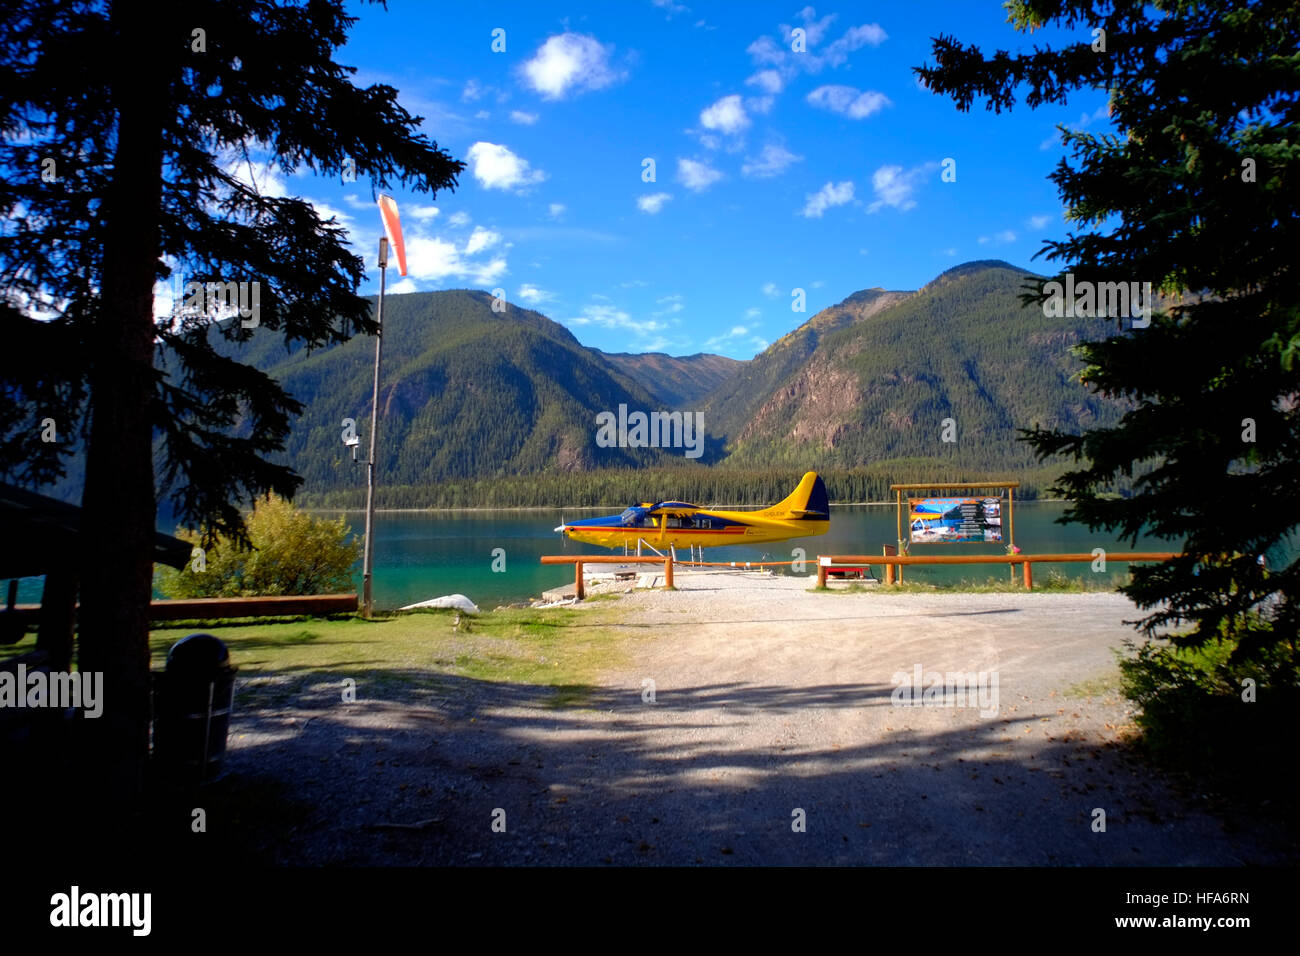 Turbine Otter Wasserflugzeug auf der Anklagebank in den Northern Rockies Lodge am Muncho Lake in BC Kanada. Die de Havilland Canada DHC-3 Ot Stockfoto